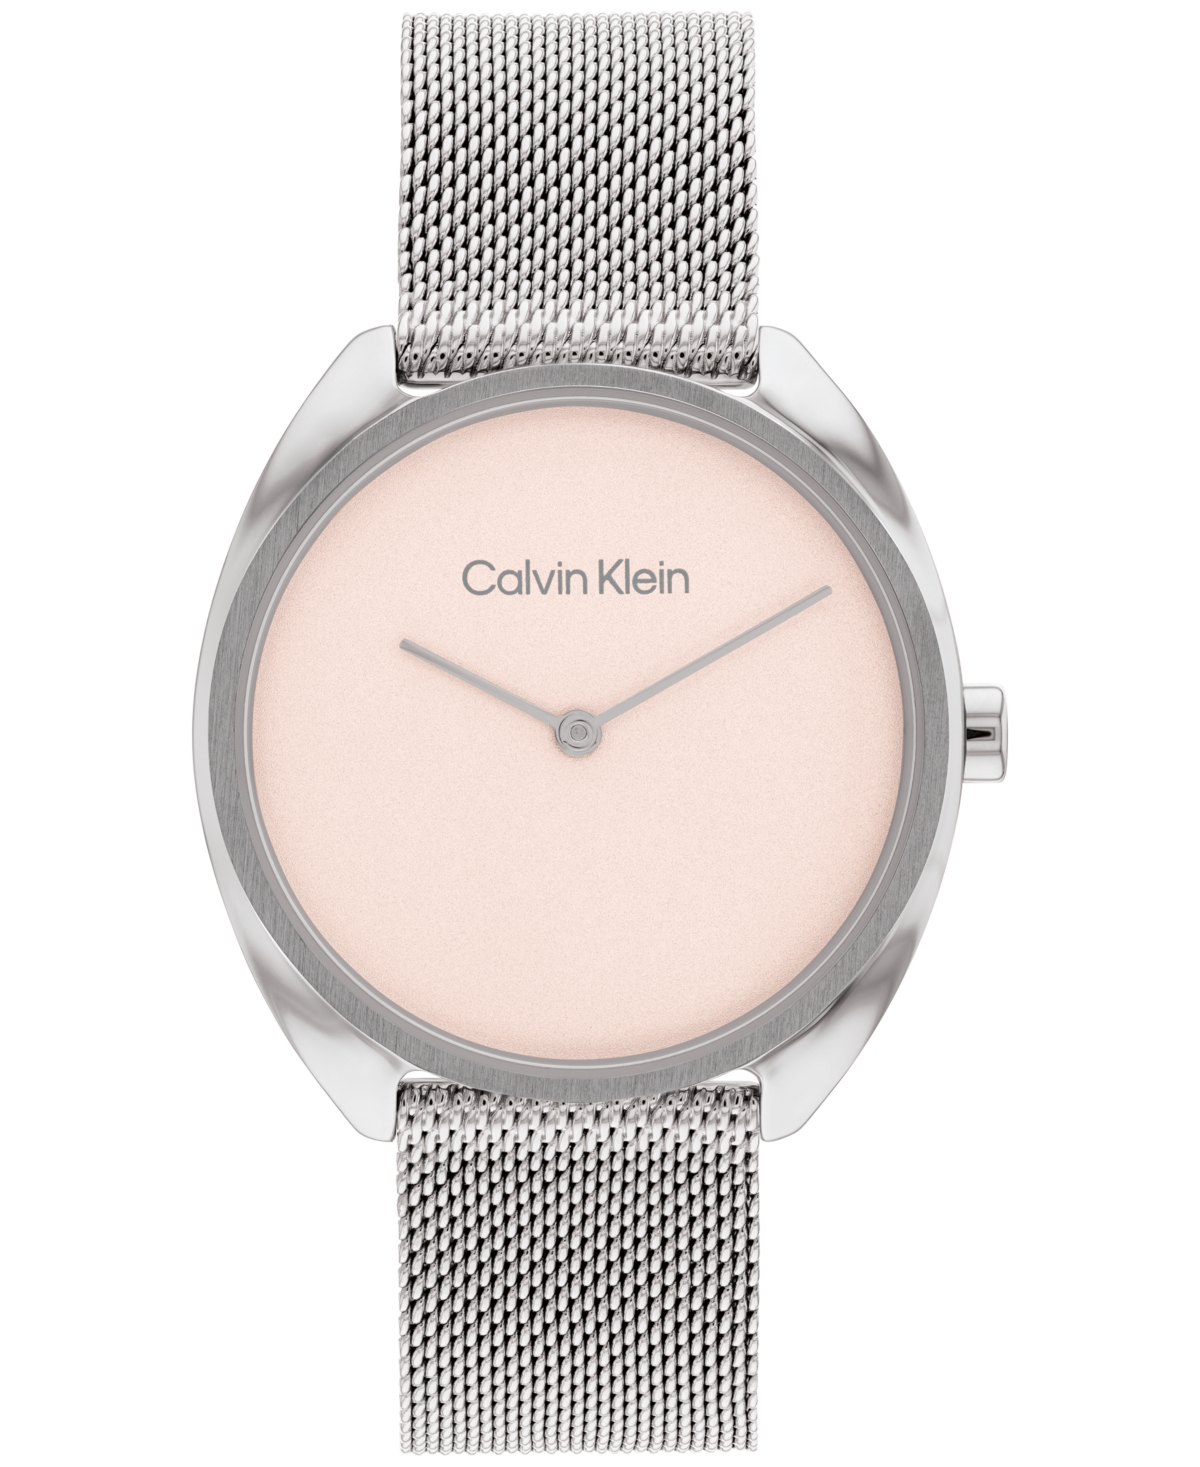 Calvin Klein Women's Silver-tone Stainless Steel Mesh Bracelet Watch 34mm